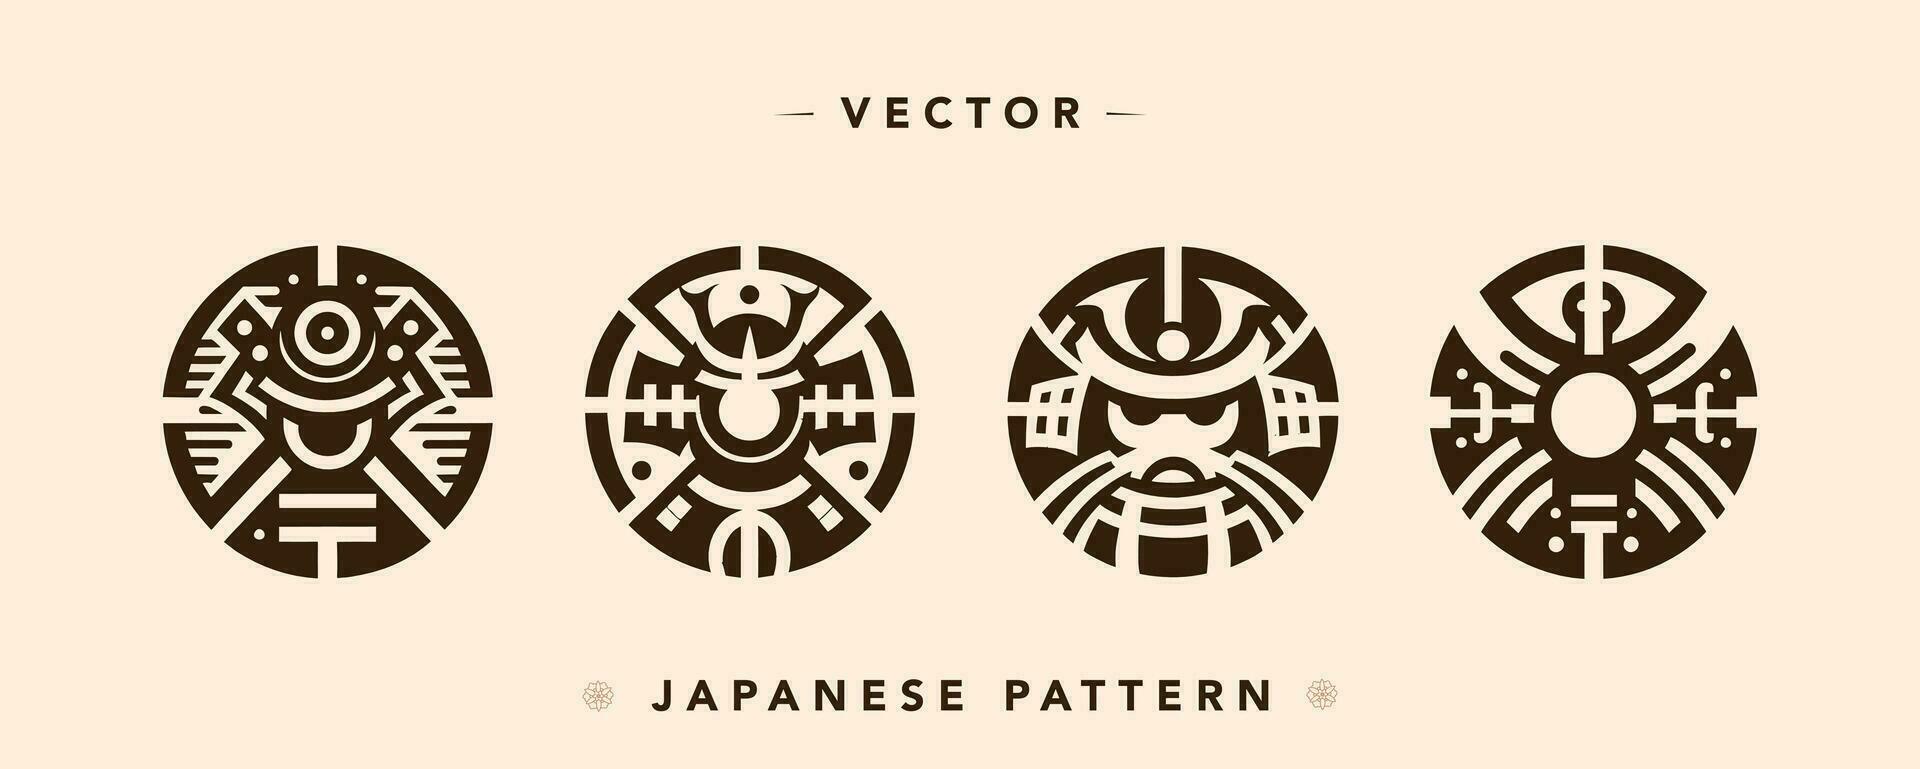 Japans sjogoen schild vector illustratie